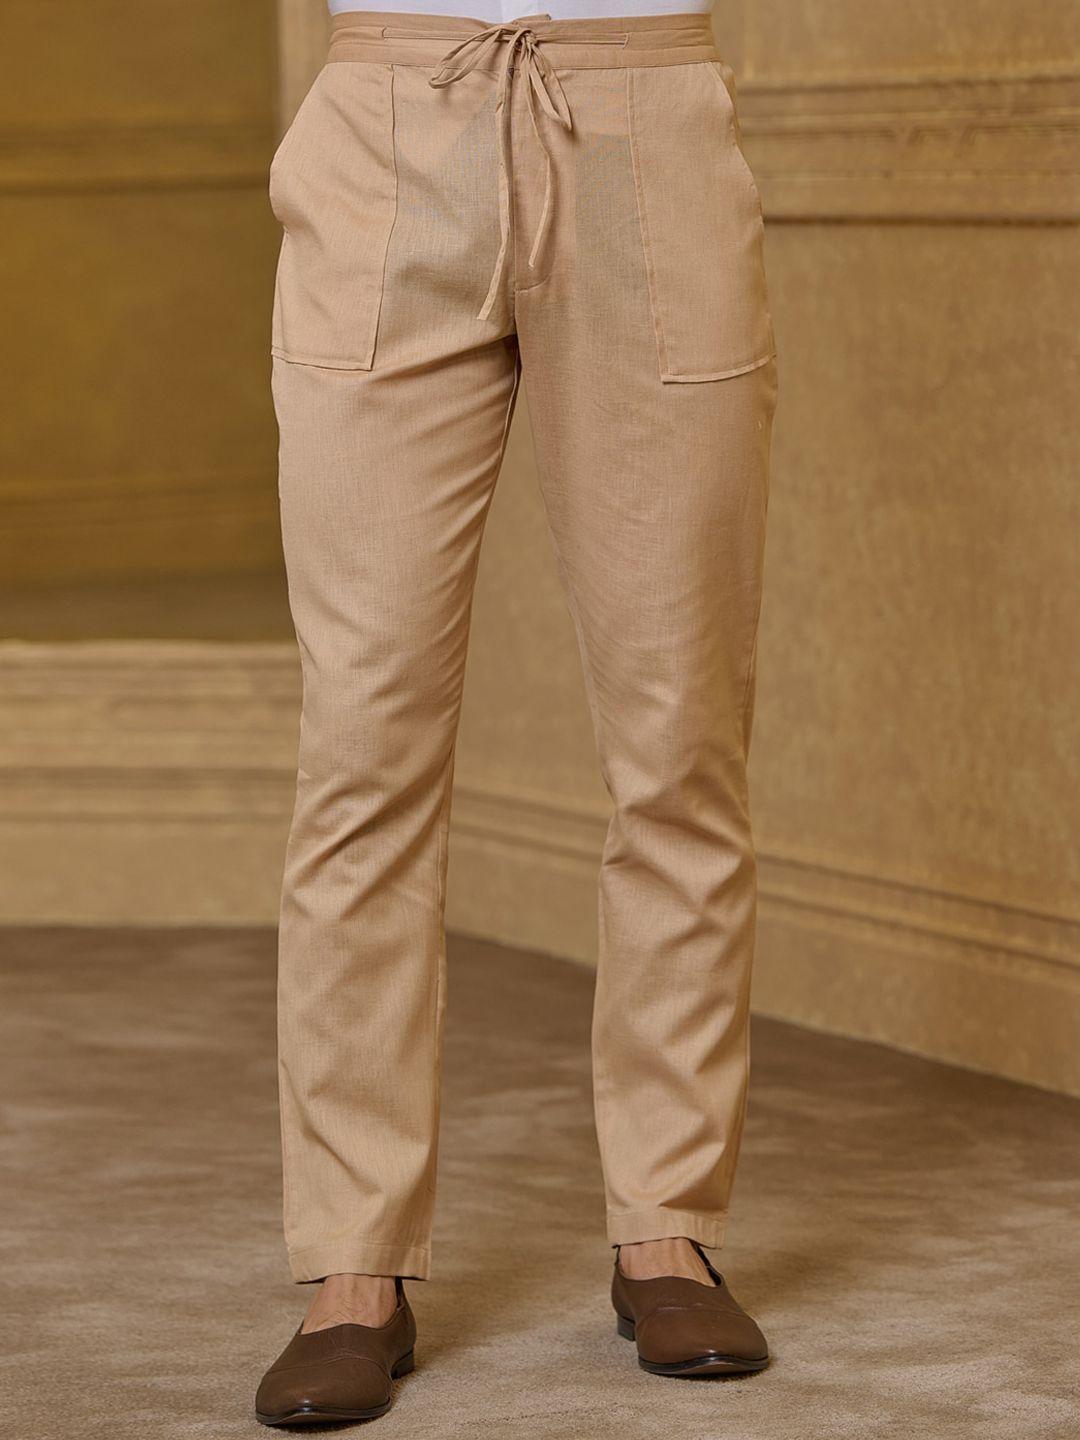 tasva men mid rise plain straight cotton linen regular trousers